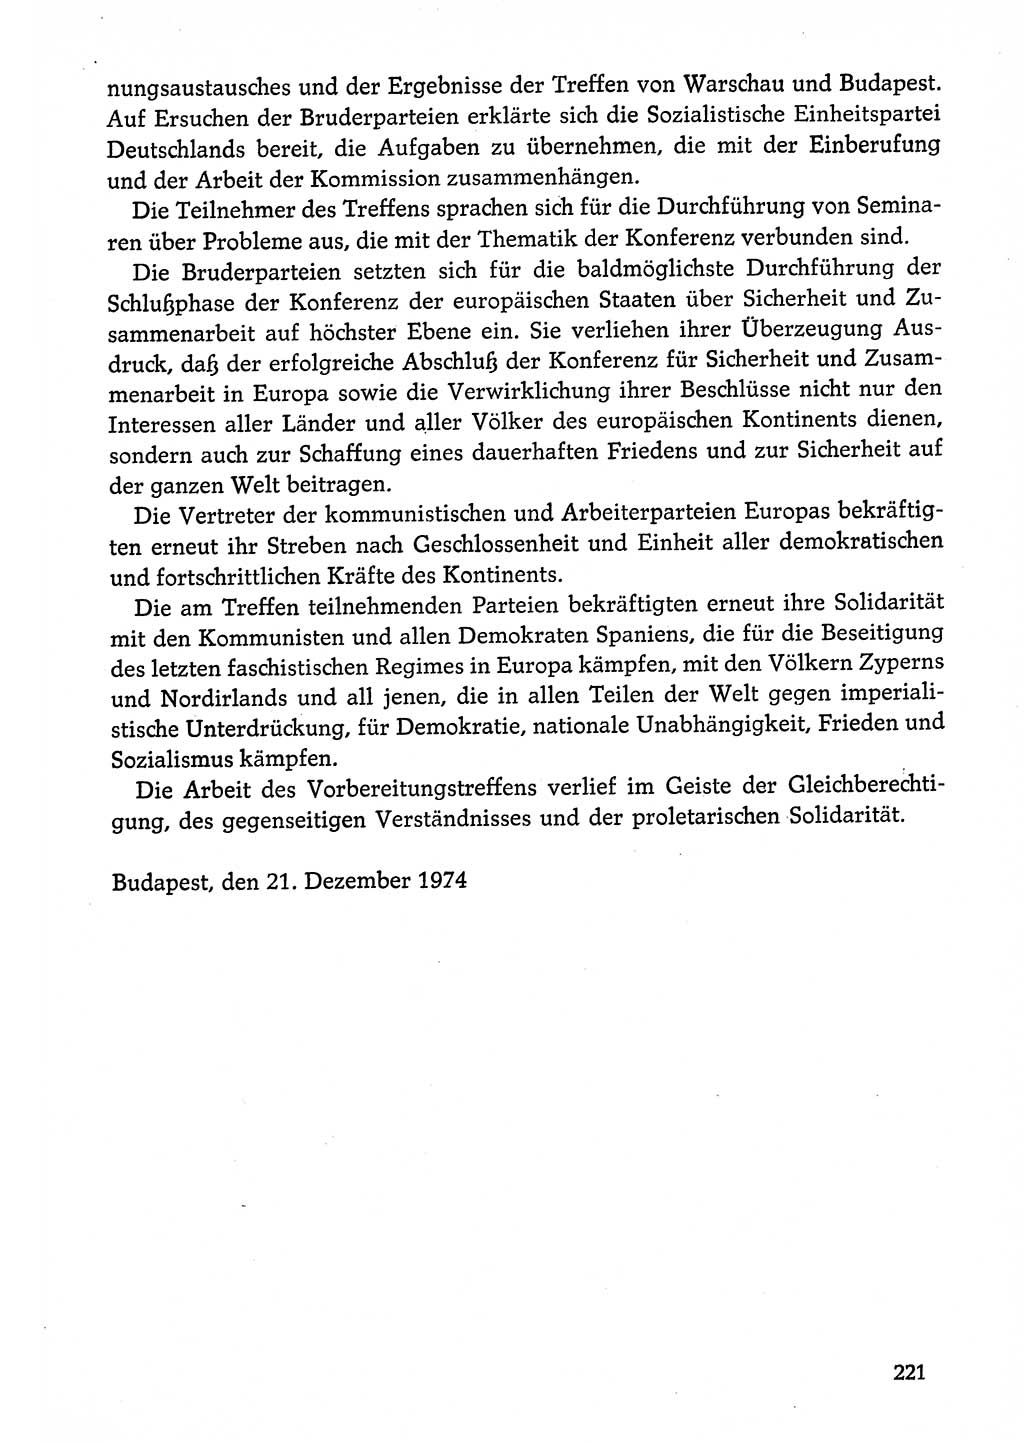 Dokumente der Sozialistischen Einheitspartei Deutschlands (SED) [Deutsche Demokratische Republik (DDR)] 1974-1975, Seite 221 (Dok. SED DDR 1978, Bd. ⅩⅤ, S. 221)